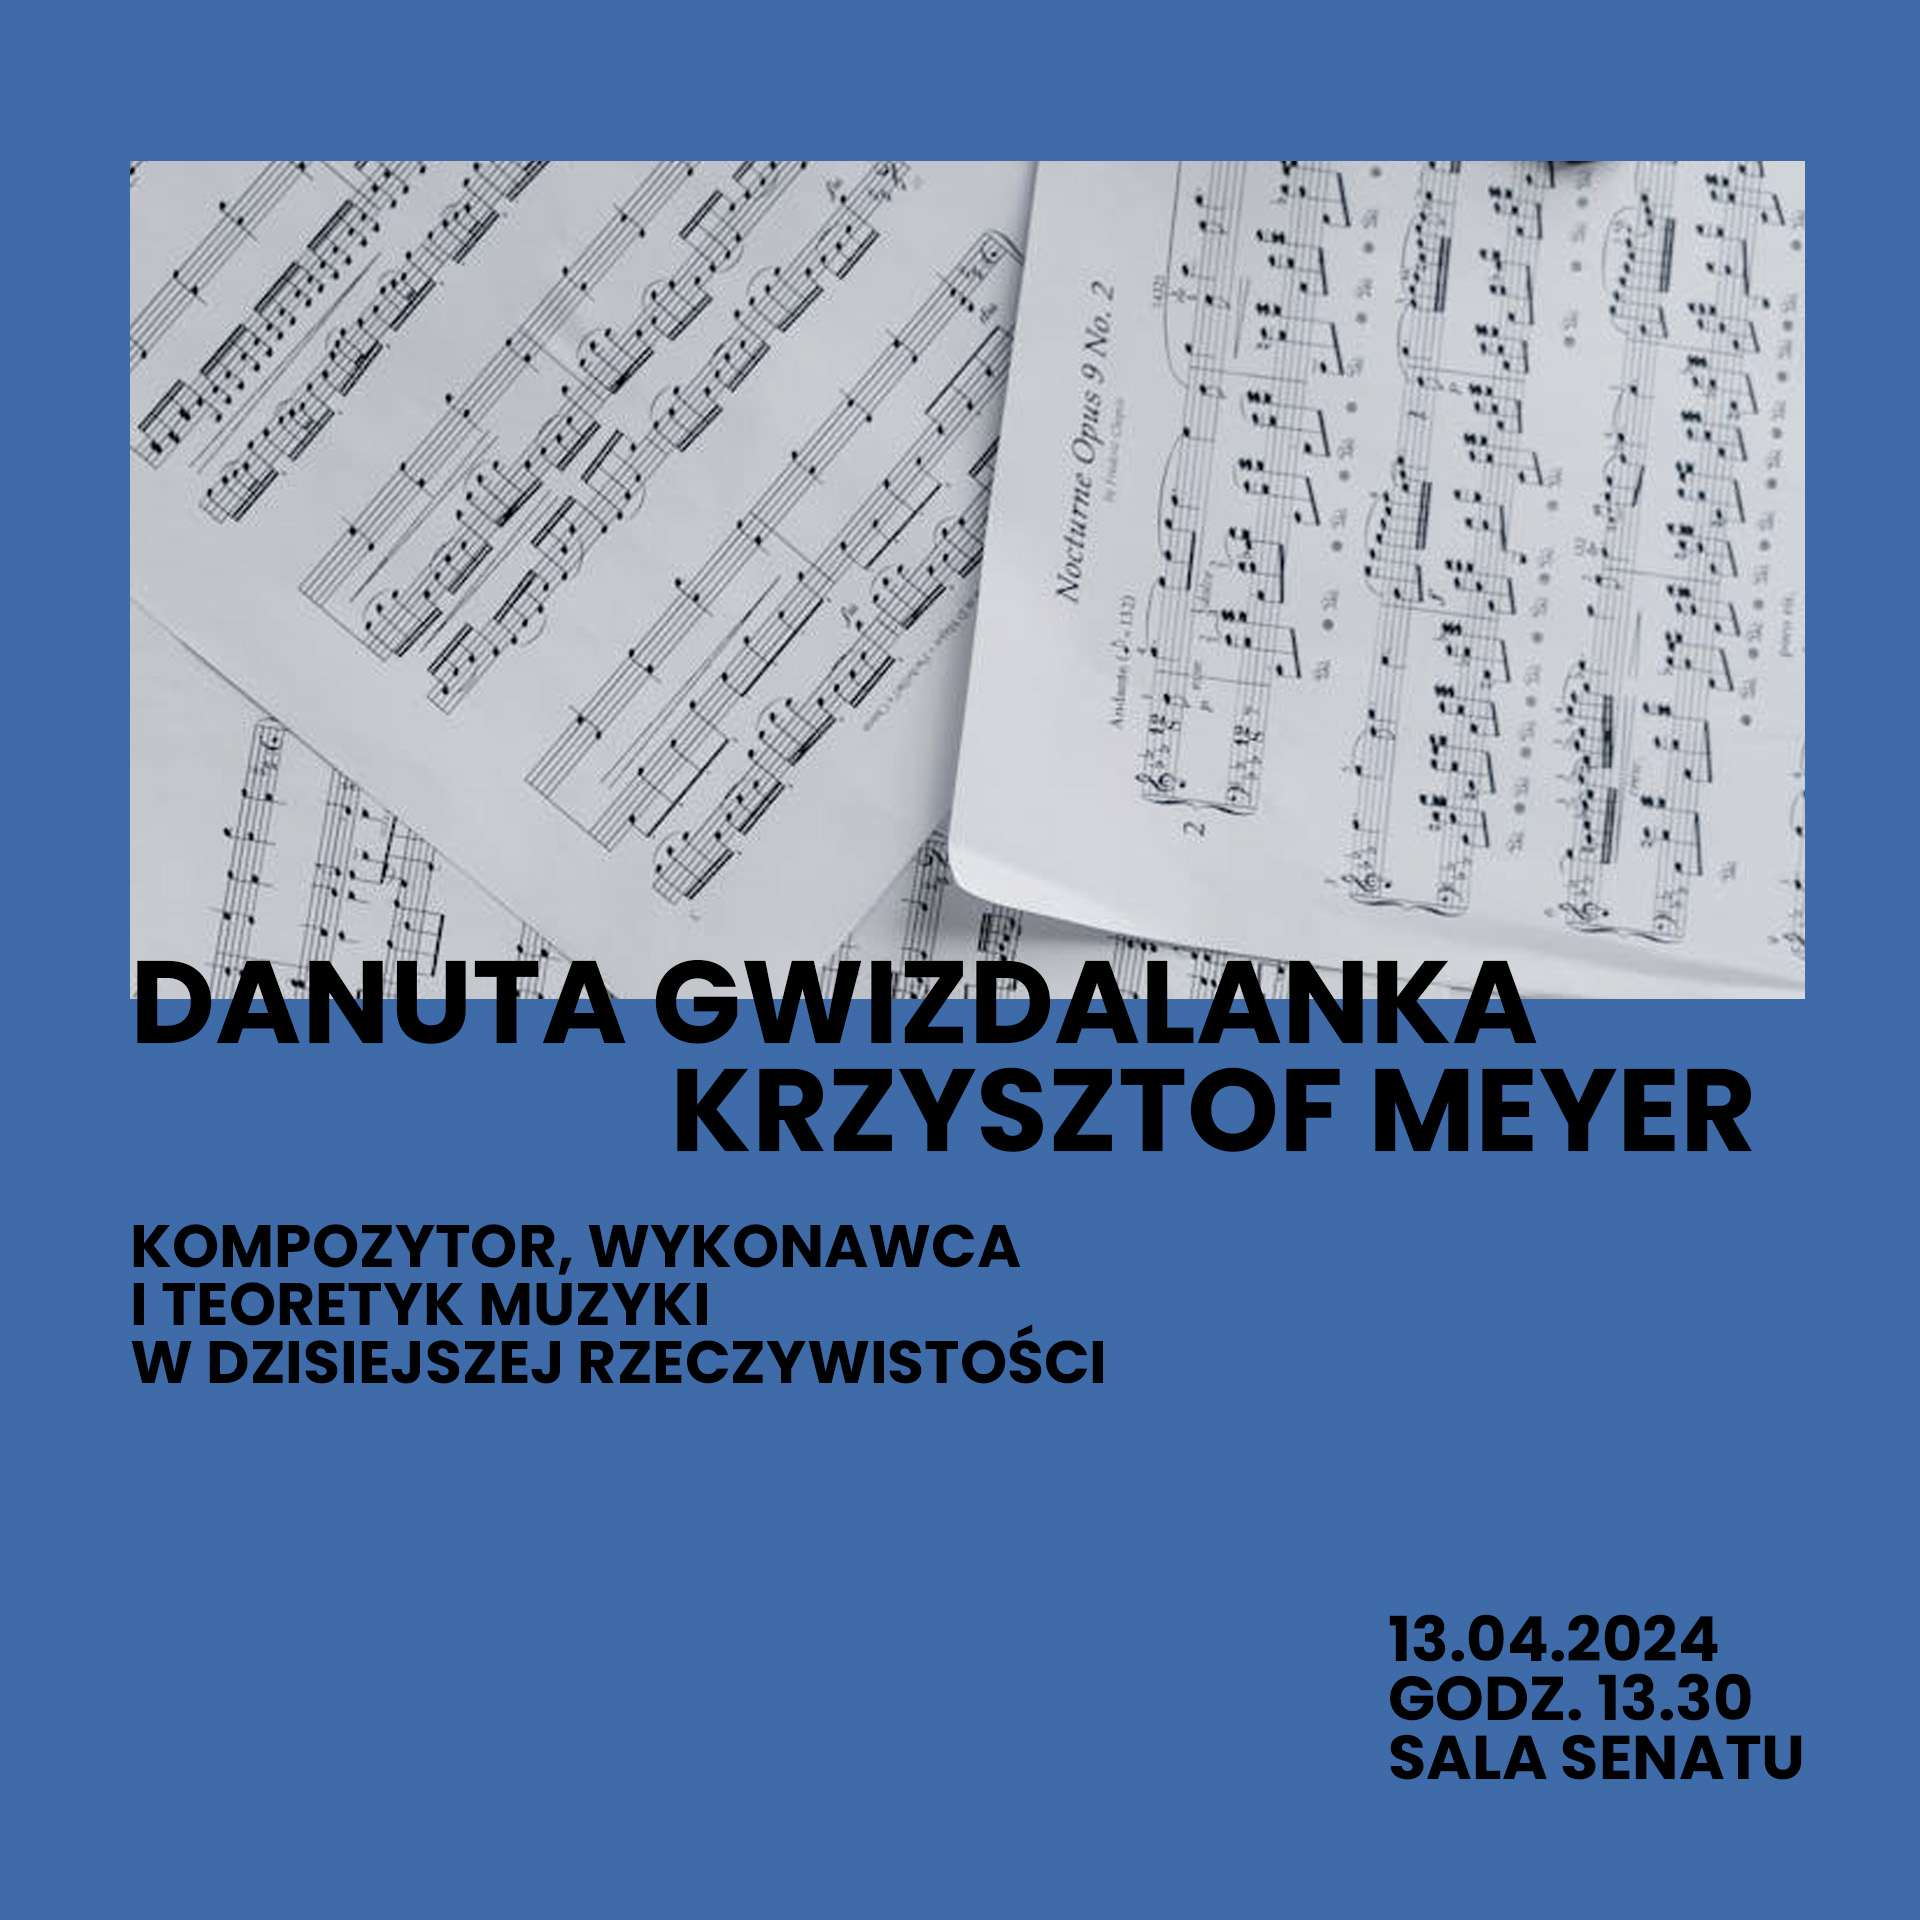 Baner zawiera informacje na temat spotkania - wykładu monograficznego, który poprowadzą Danuta Gwizdalanka i Krzysztof Meyer w dniu 13 kwietnia 2024